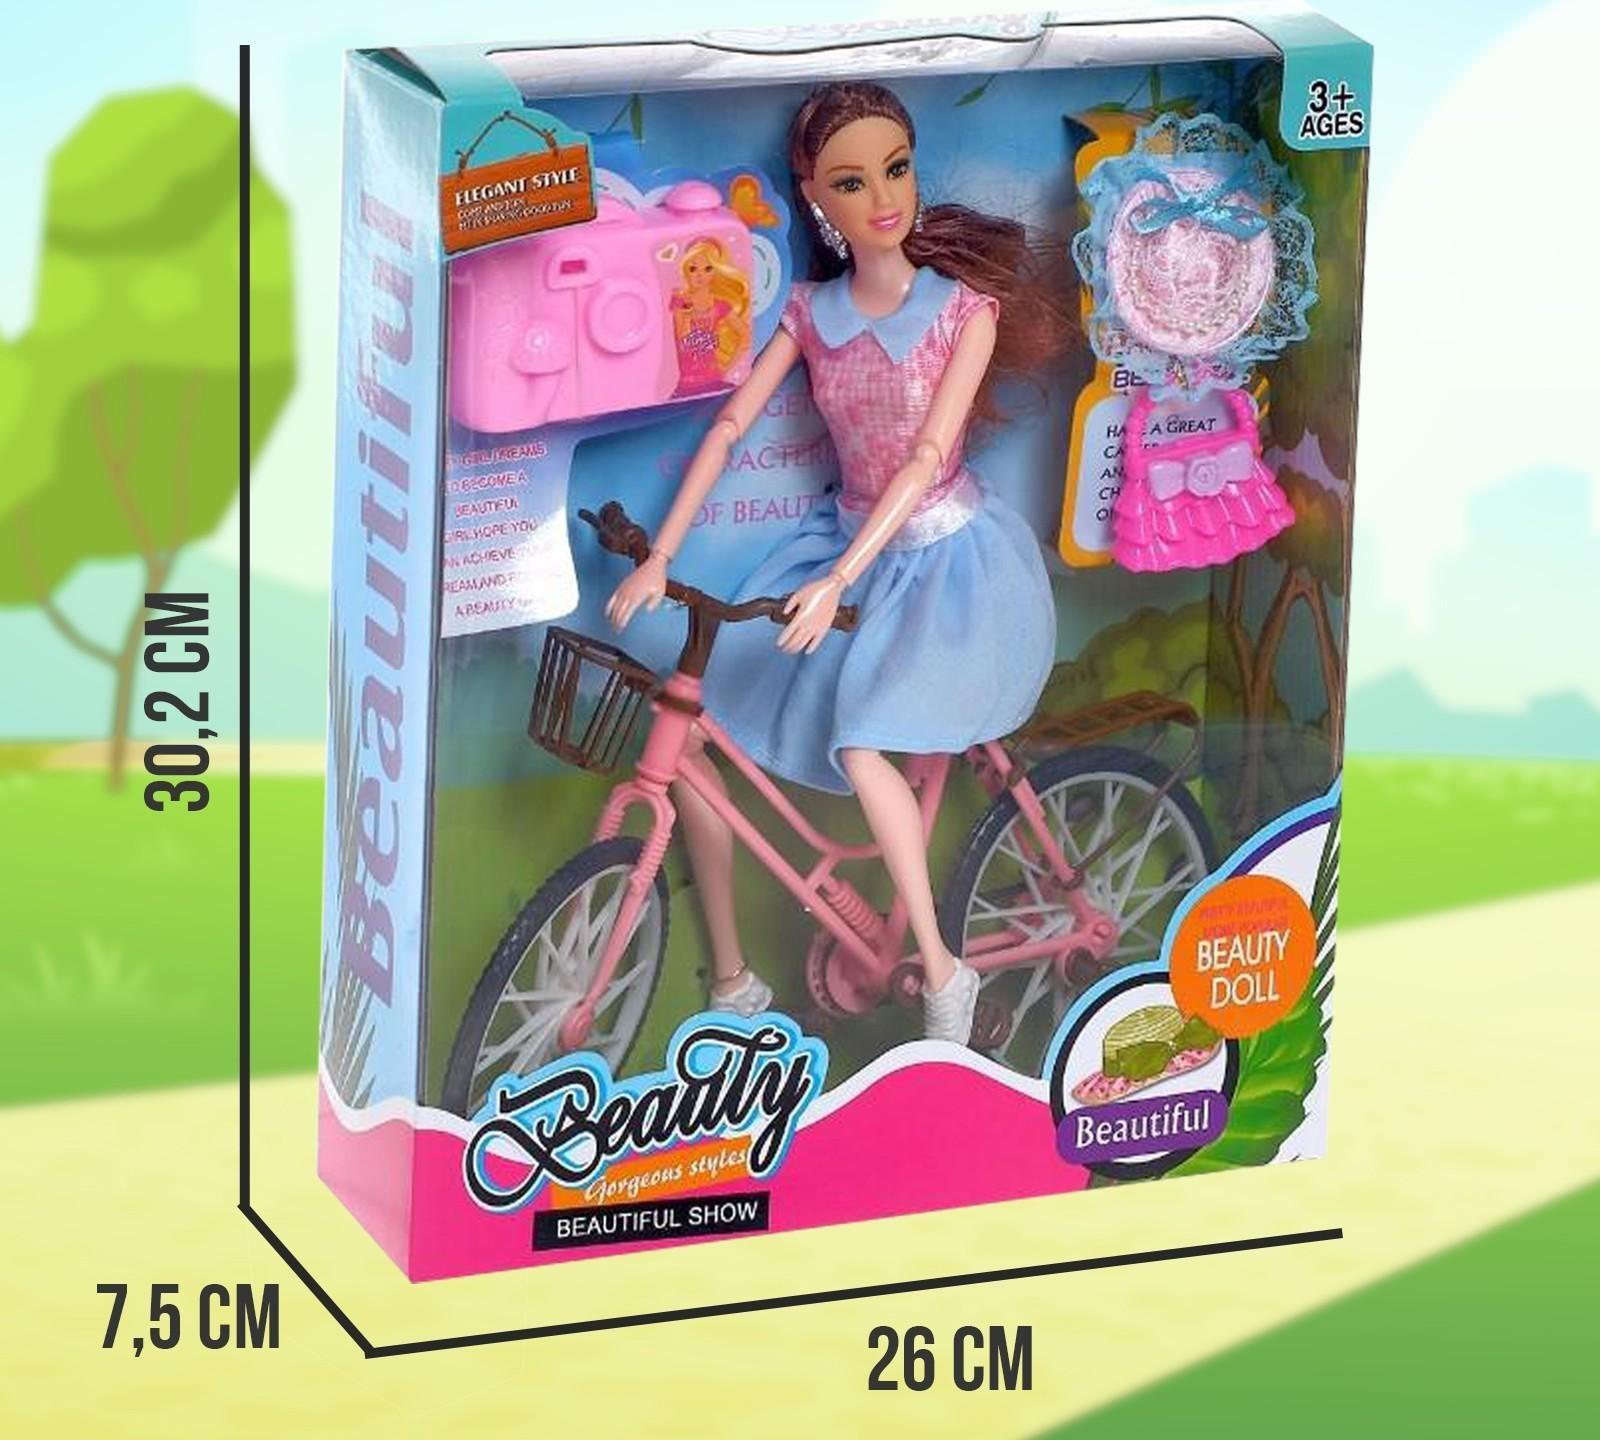 Кукла-модель шарнирная «Юля» на велосипеде, с аксессуарами